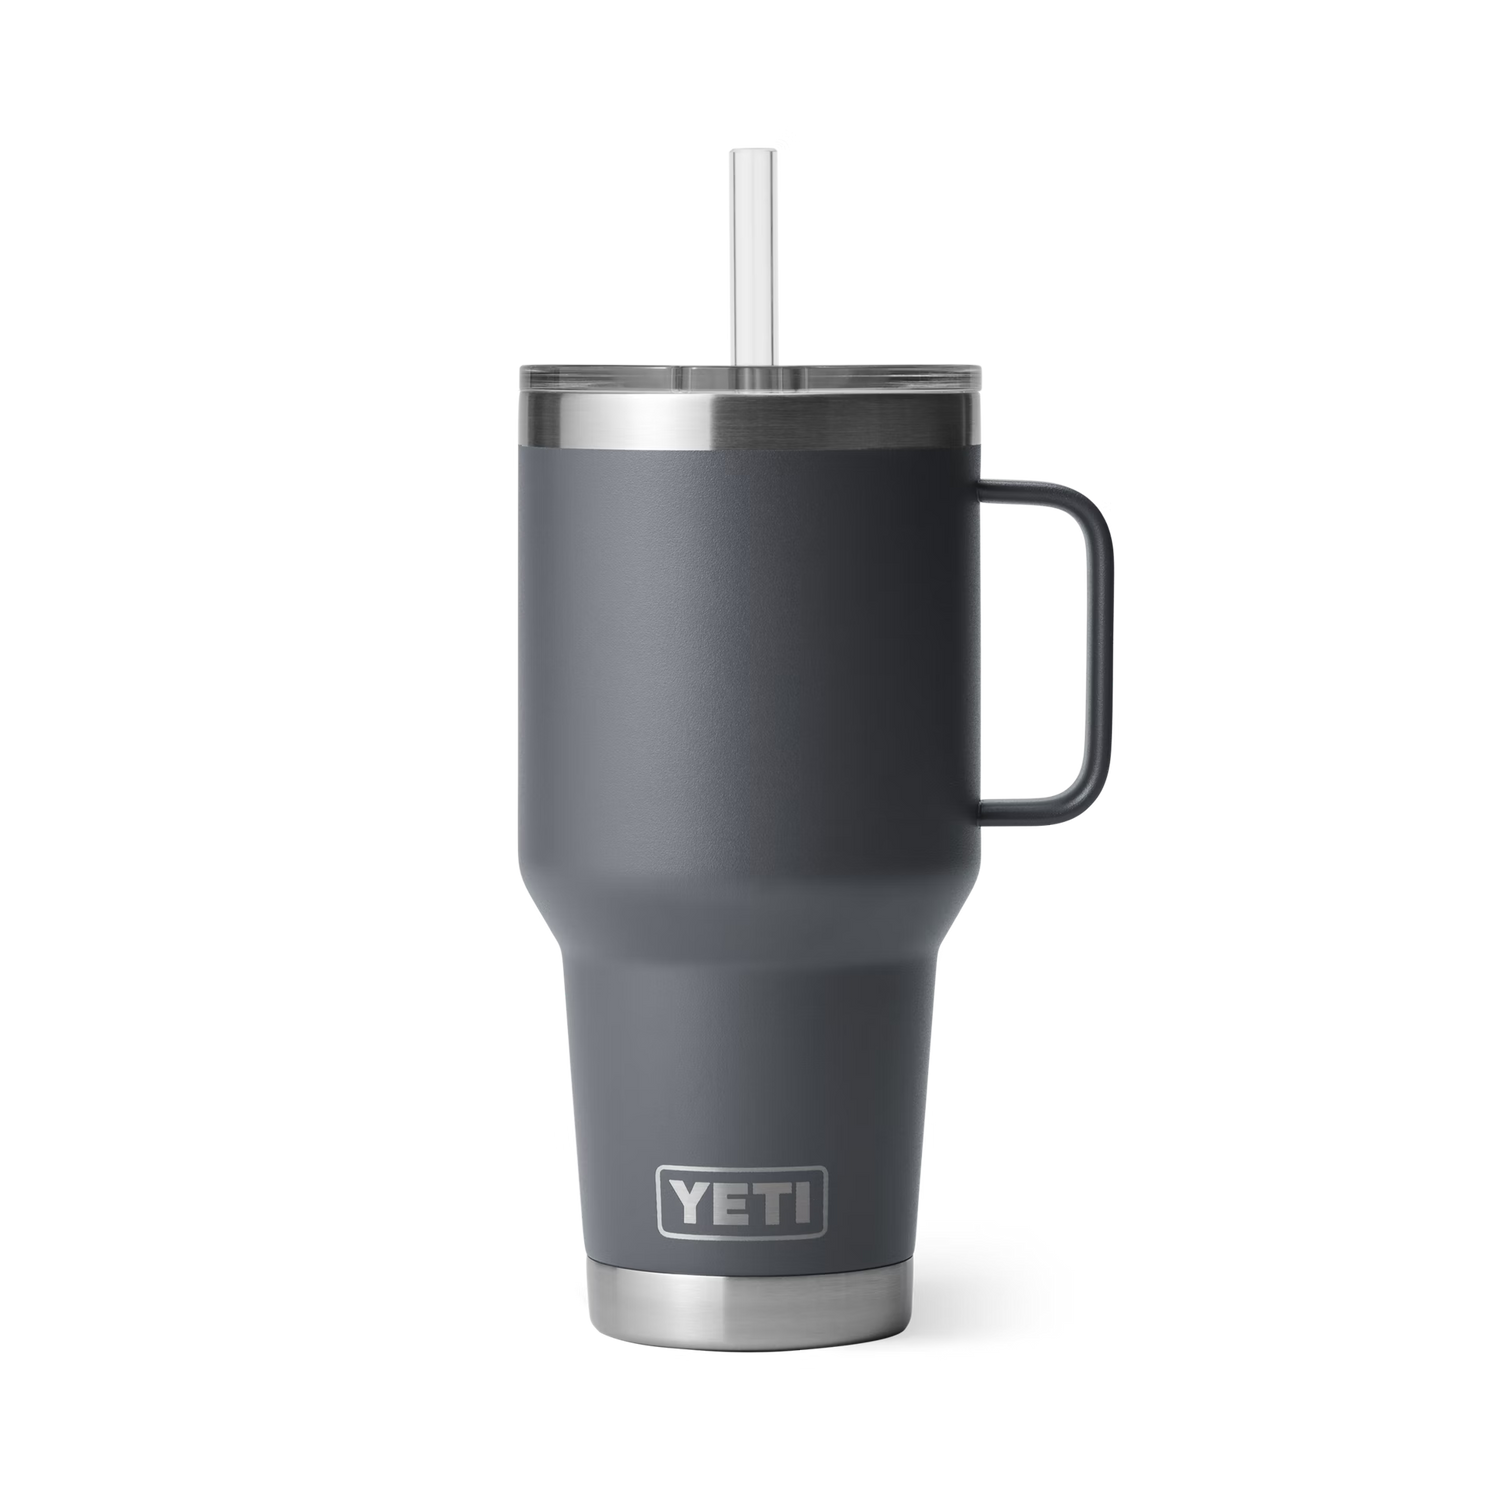 YETI Rambler 24 oz mug w/Magslider Lid Highlands Olive-Limited Edition